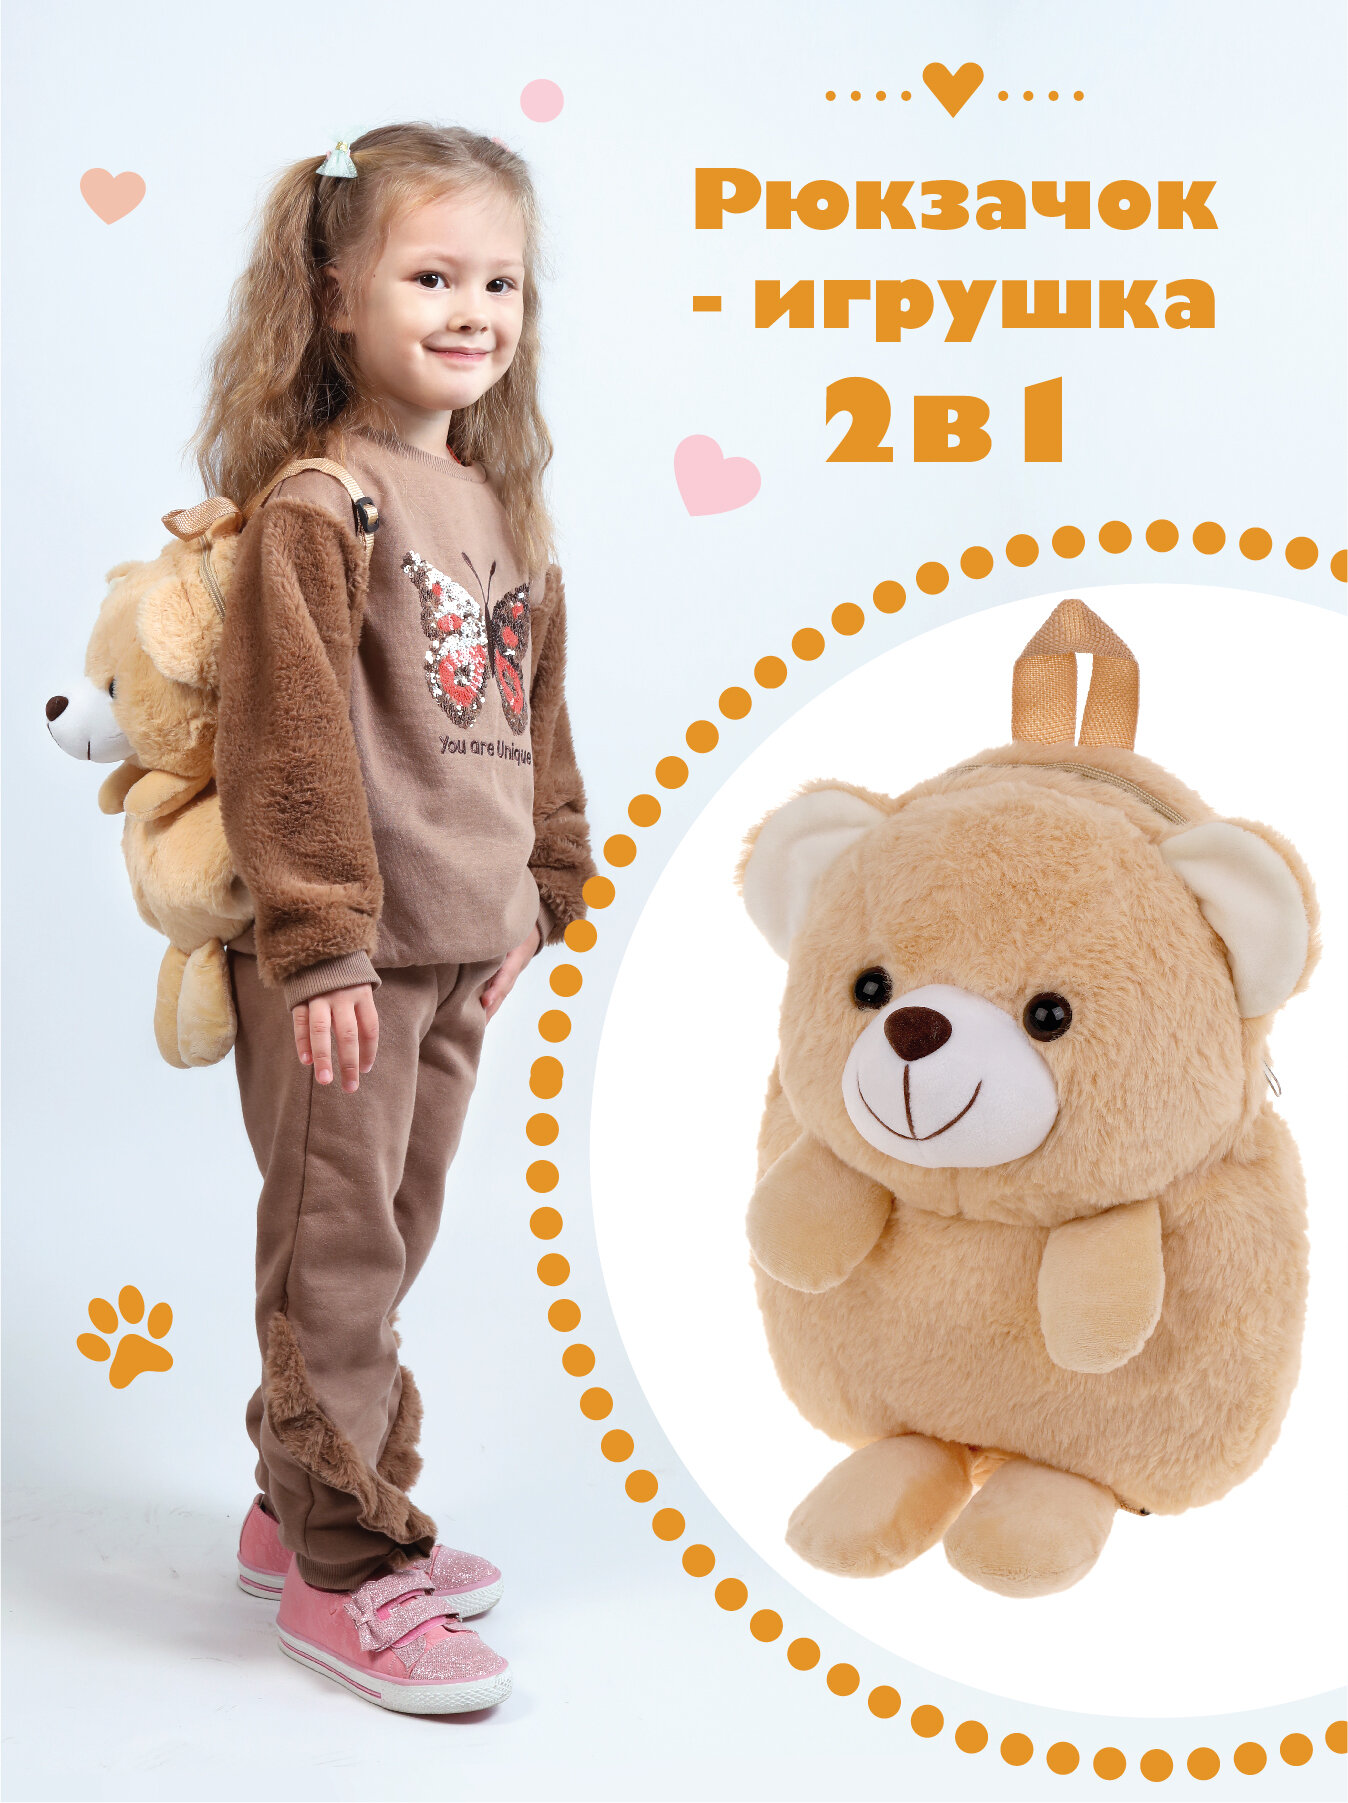 Рюкзак плюшевый для девочки Медвежонок 30 см Fluffy Family